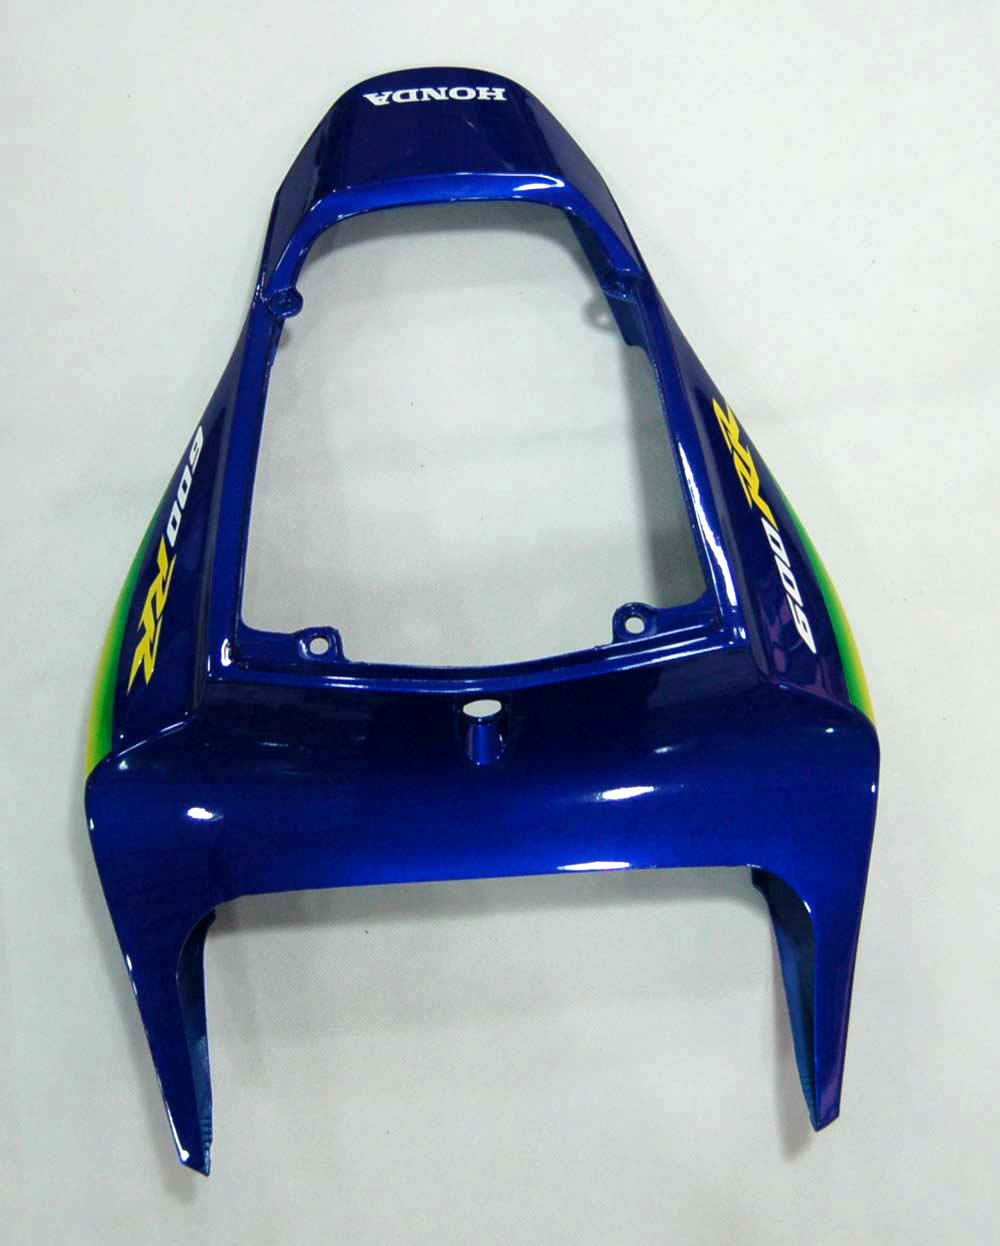 Kit carena Amotopart 2009-2012 Honda CBR600RR blu e verde